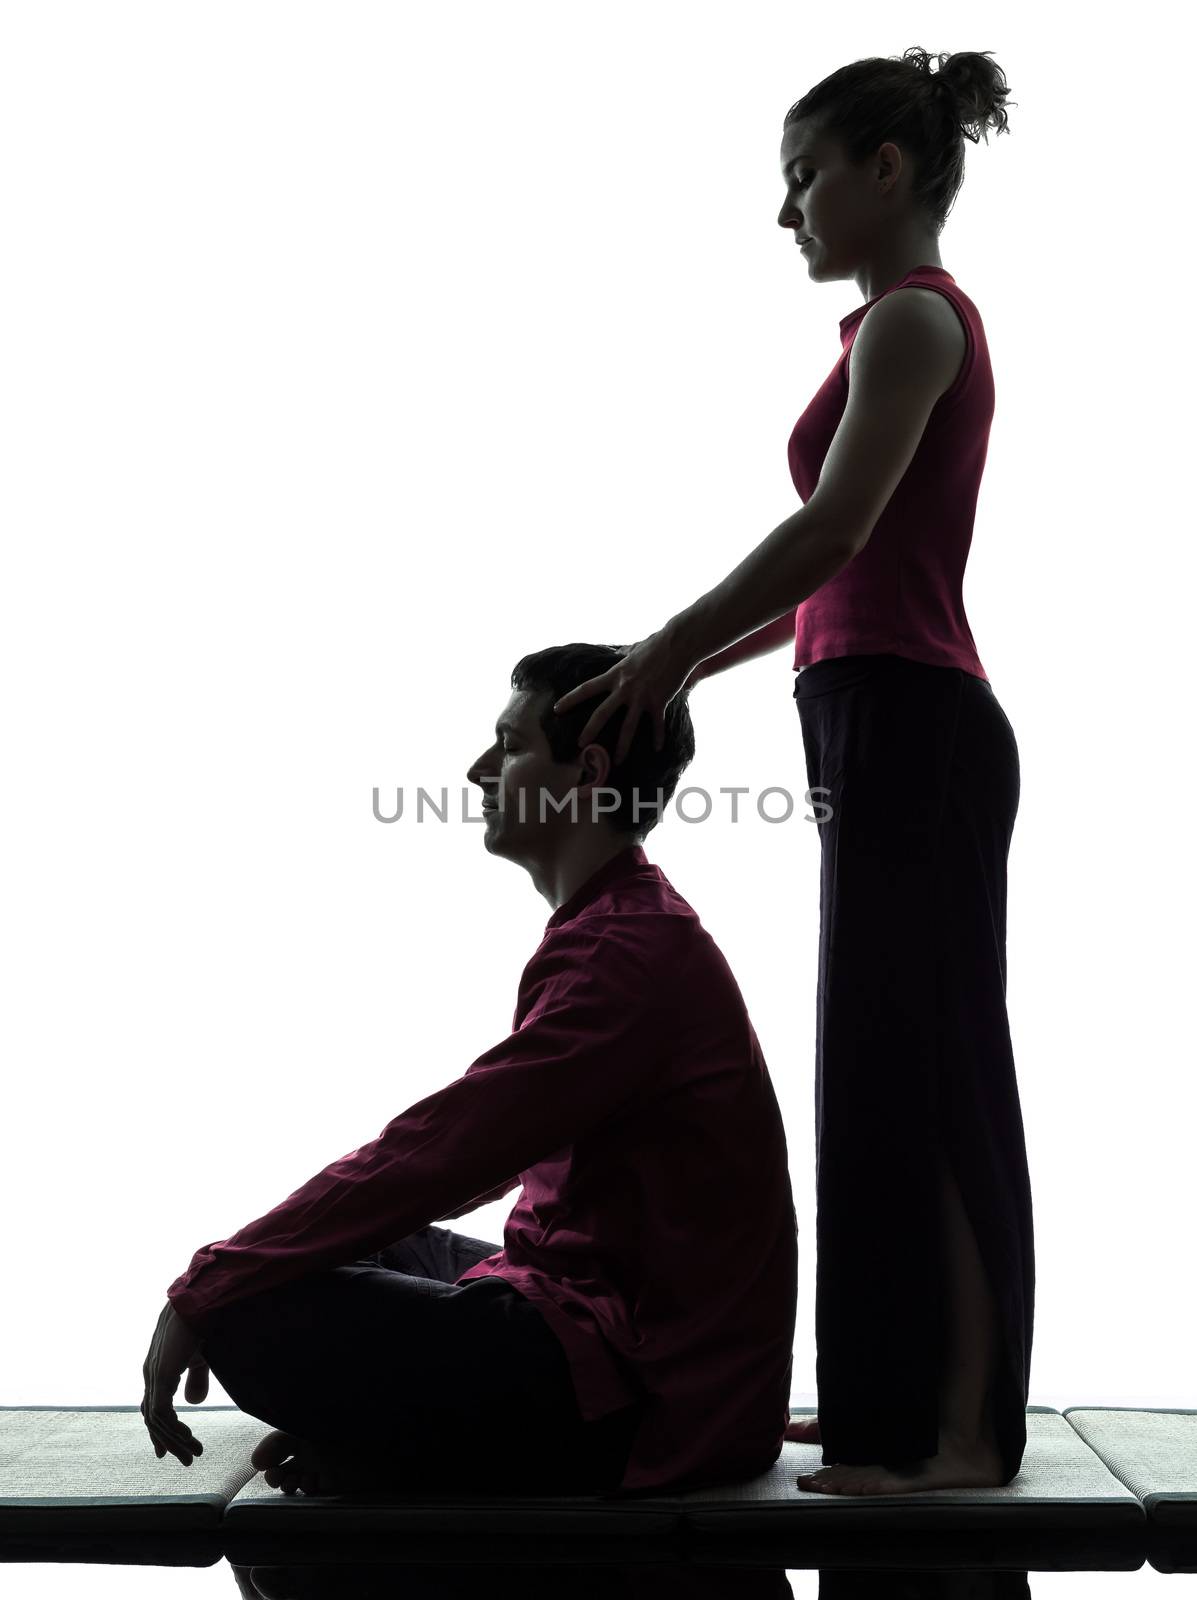 thai massage silhouette by PIXSTILL